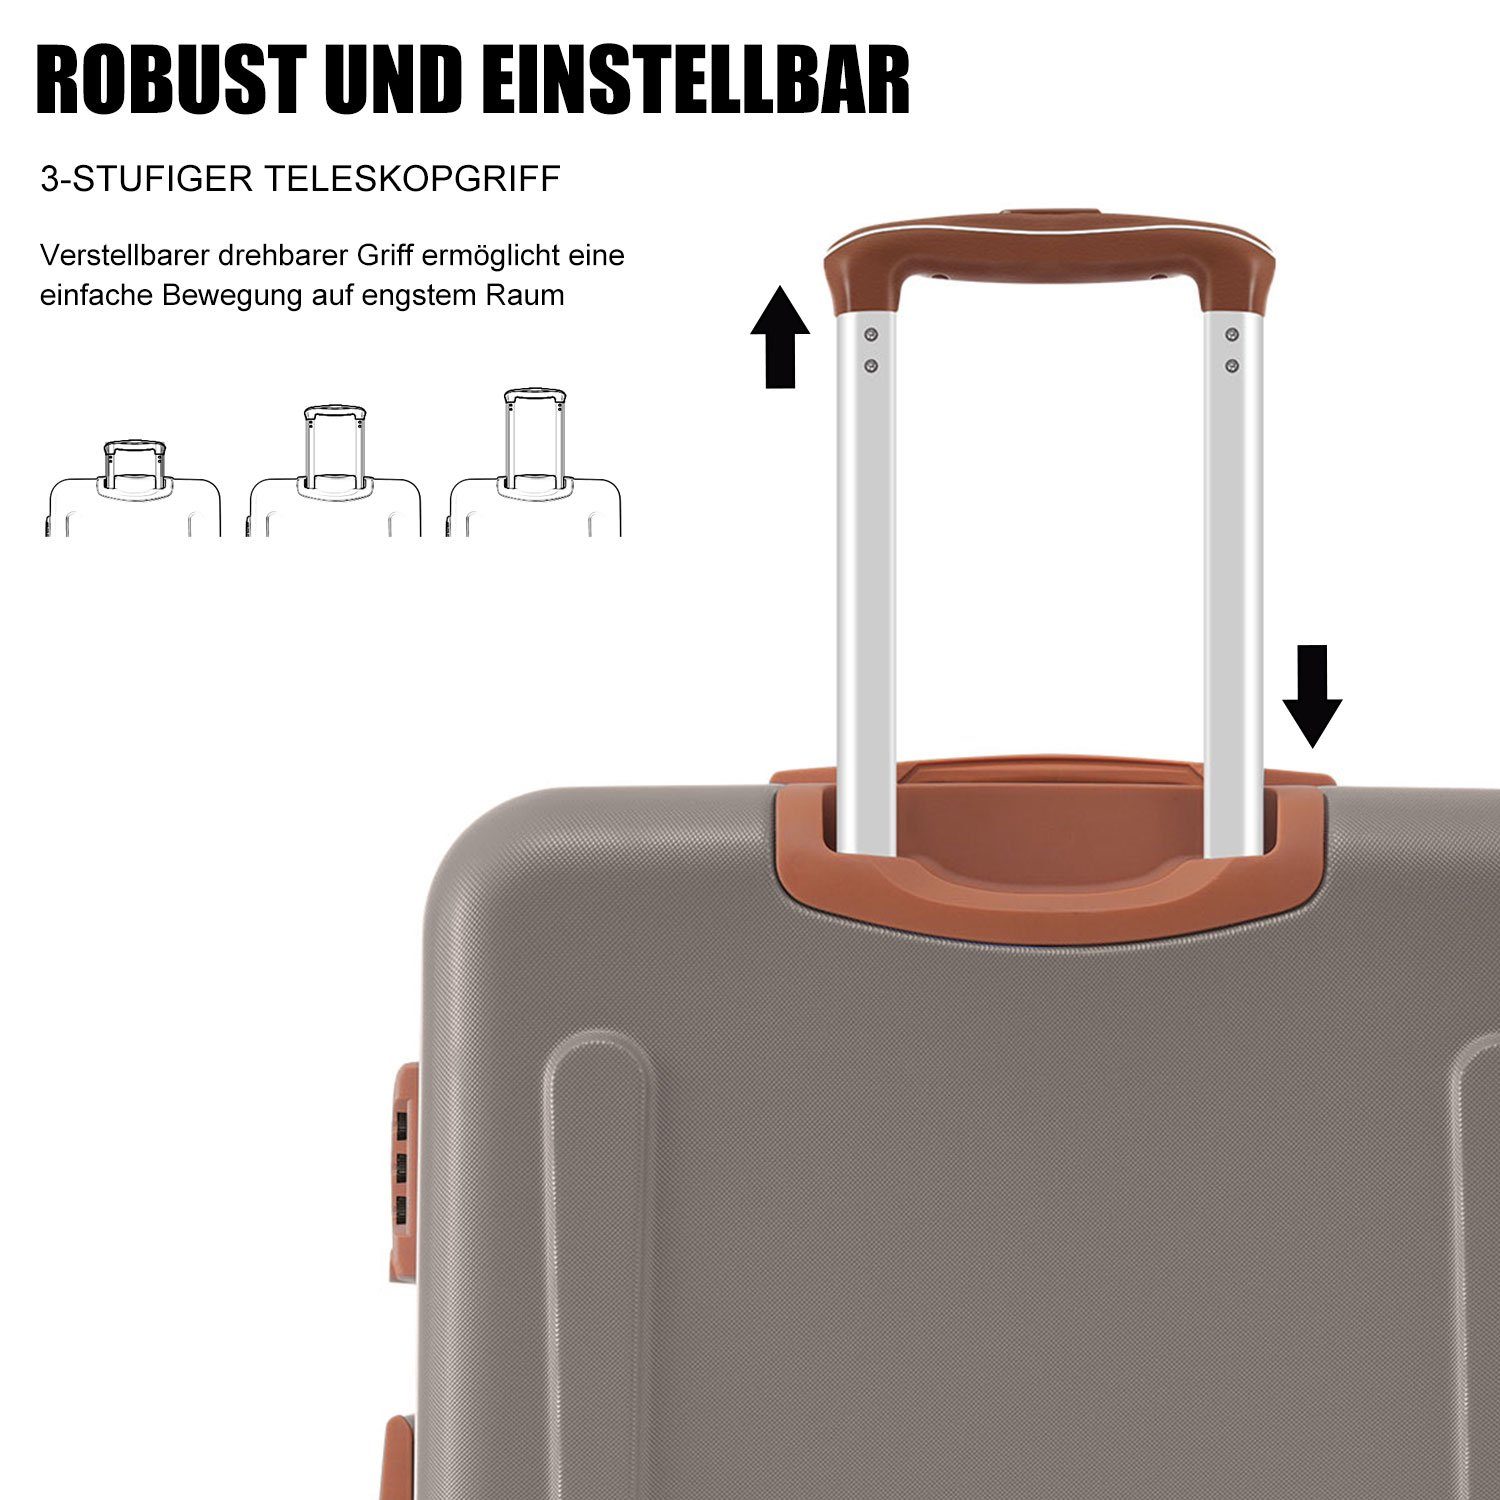 Ulife Trolleyset Kofferset Handgepäck Reisekoffer ABS-Material, TSA Zollschloss, Braun Rollen, tlg) 4 (3